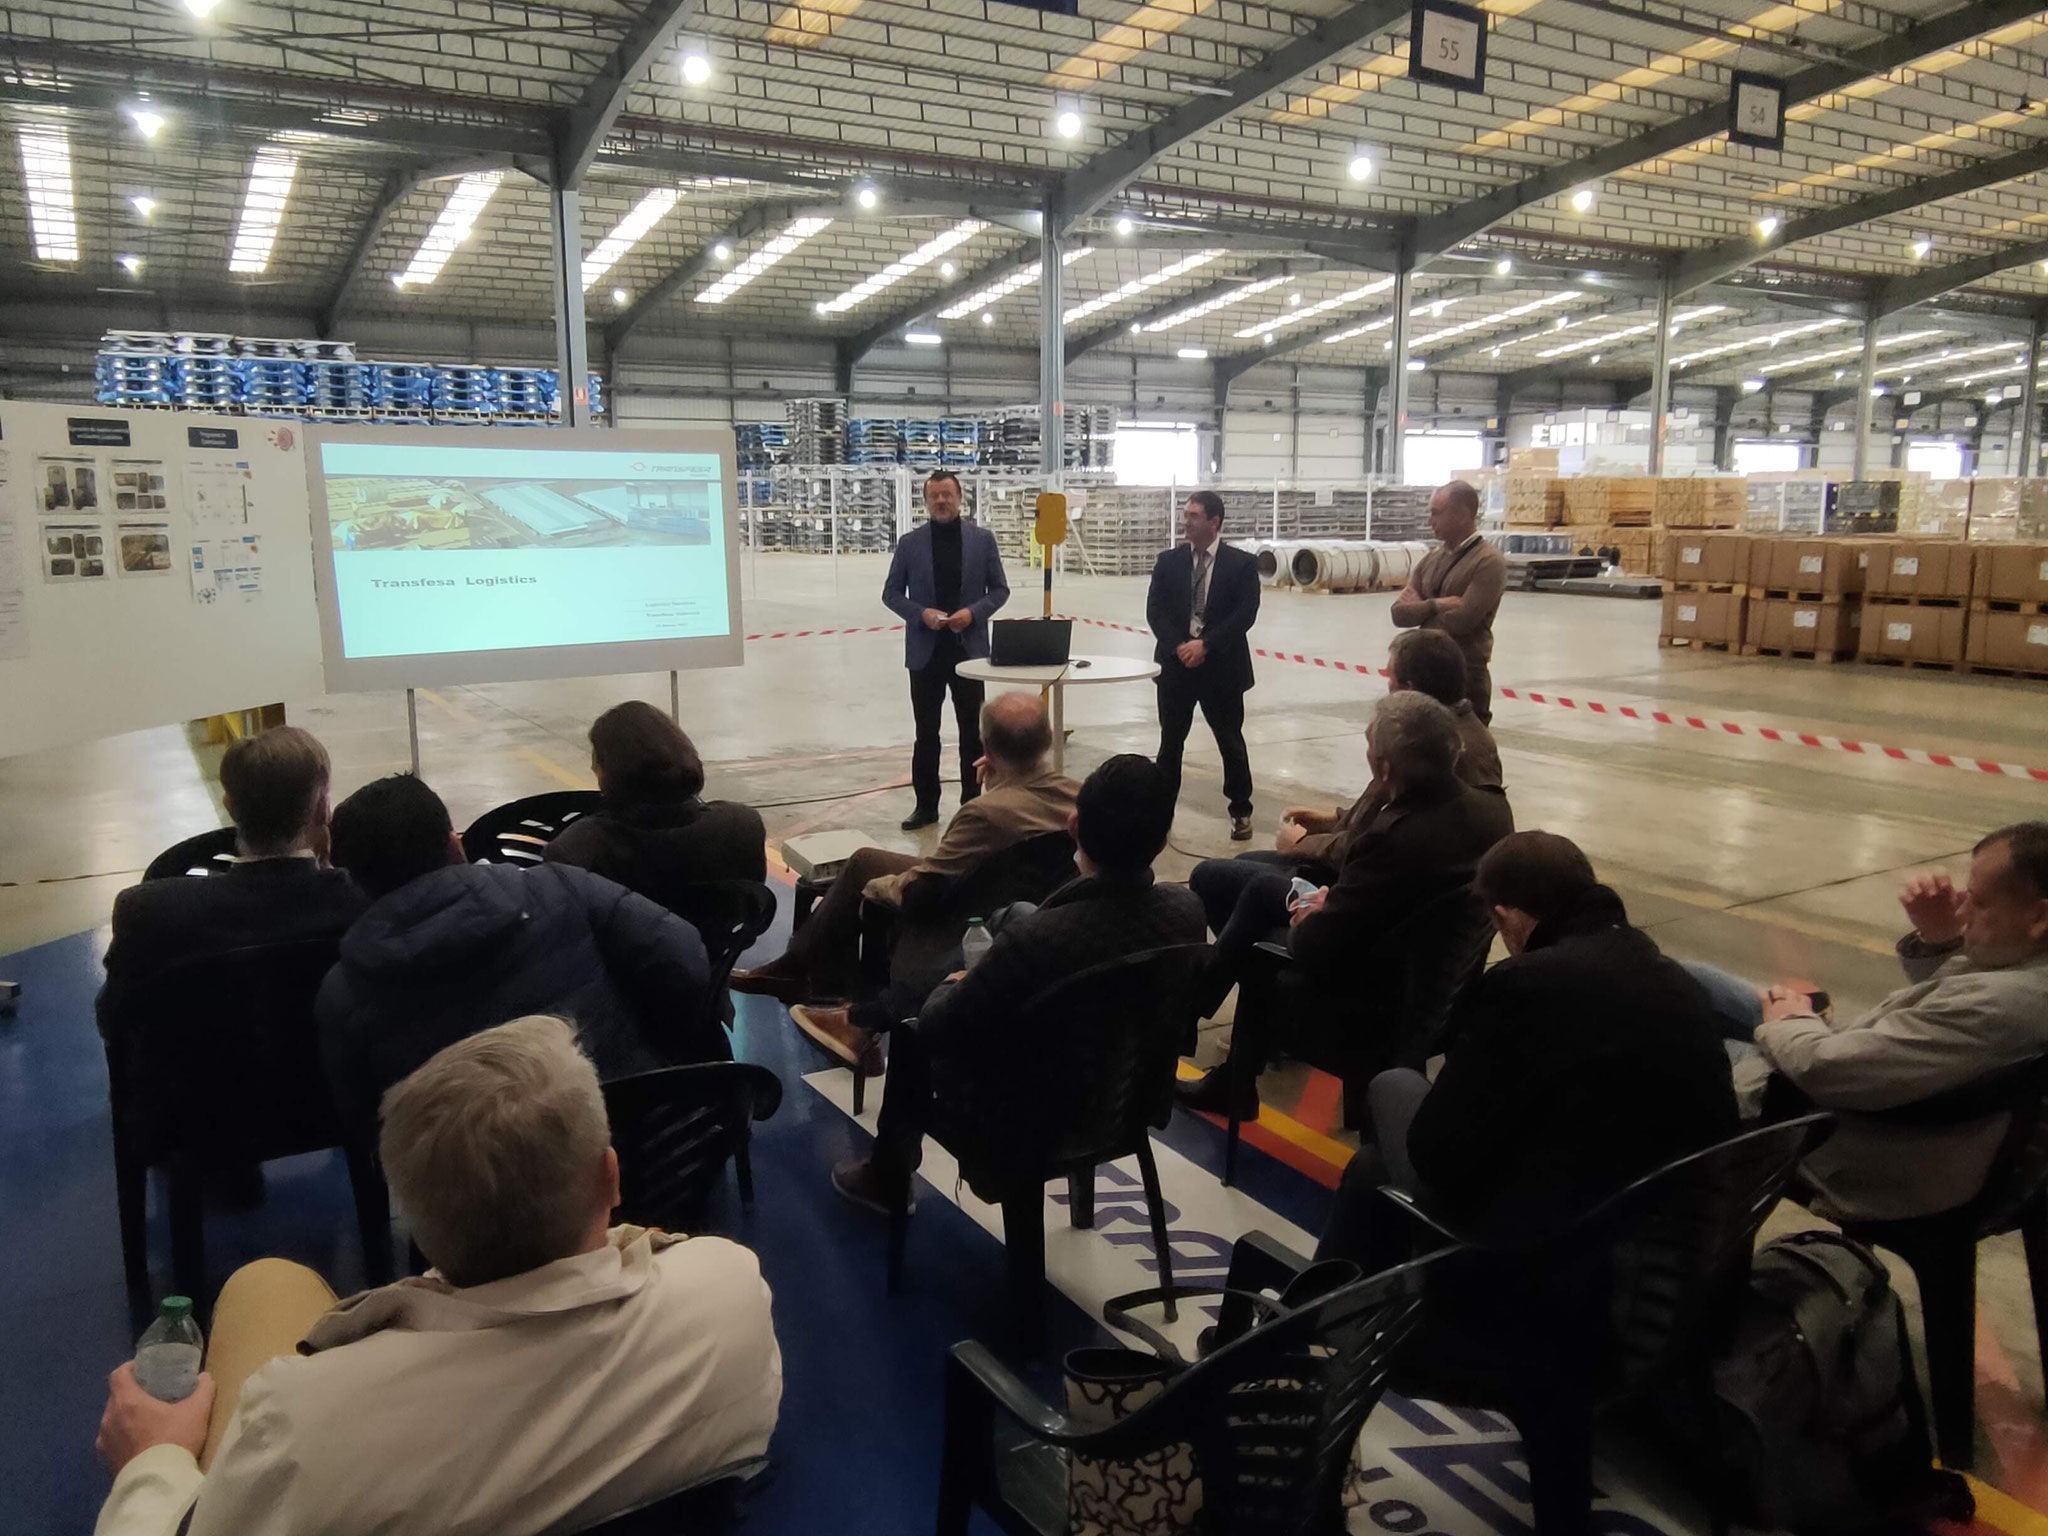 Presentación del equipo directivo de Transfesa Logistics Valencia